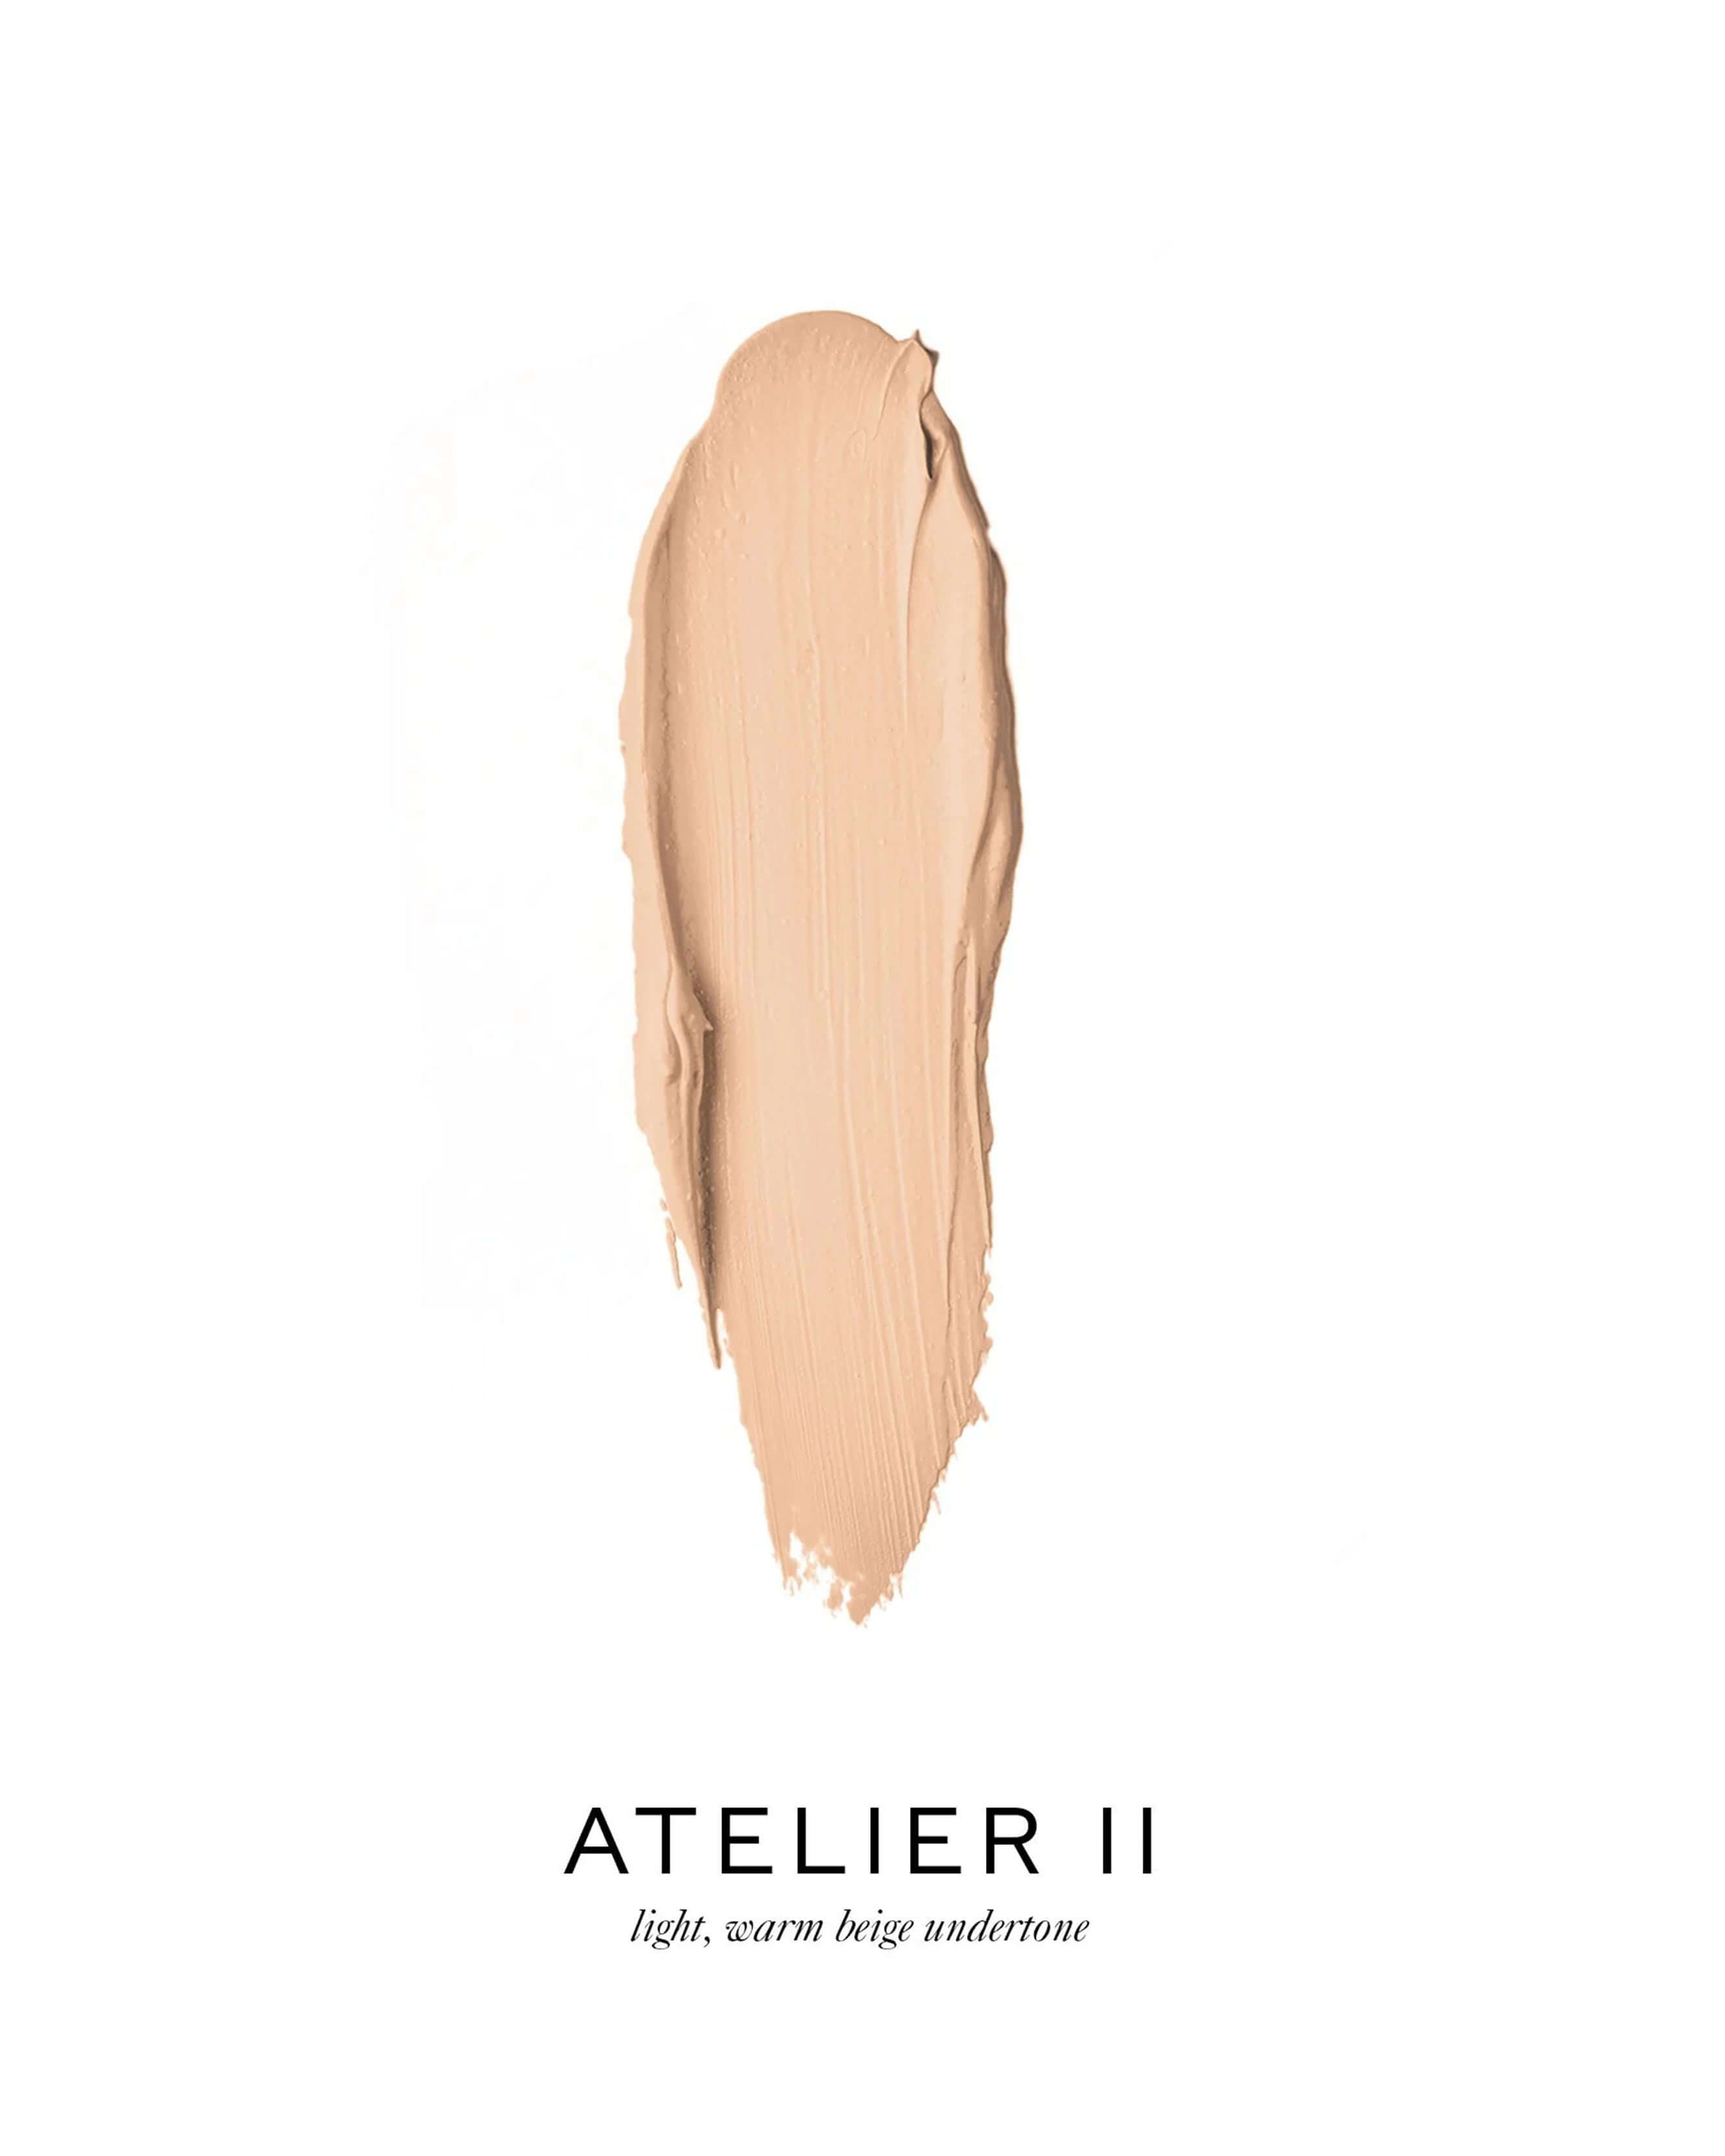 Atelier II (light, warm beige undertone)